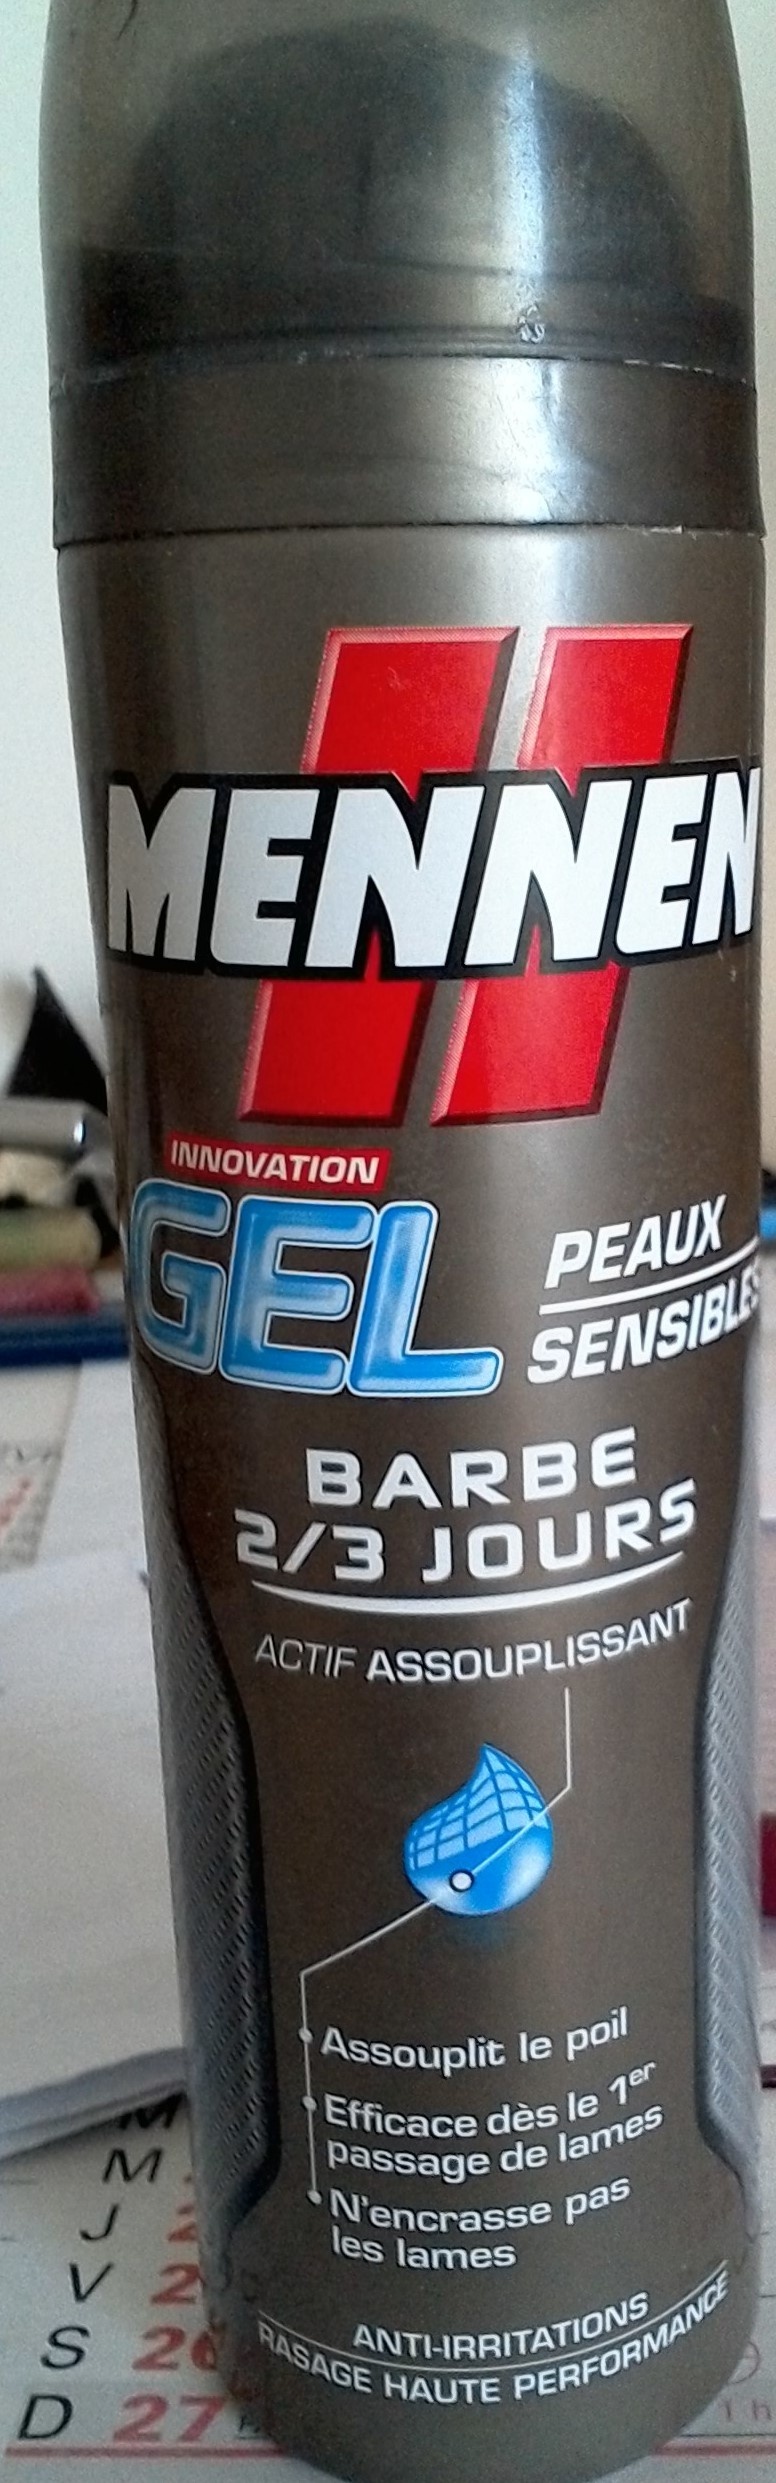 Gels Peaux Sensibles - Barbe 2/3 jours - Product - fr